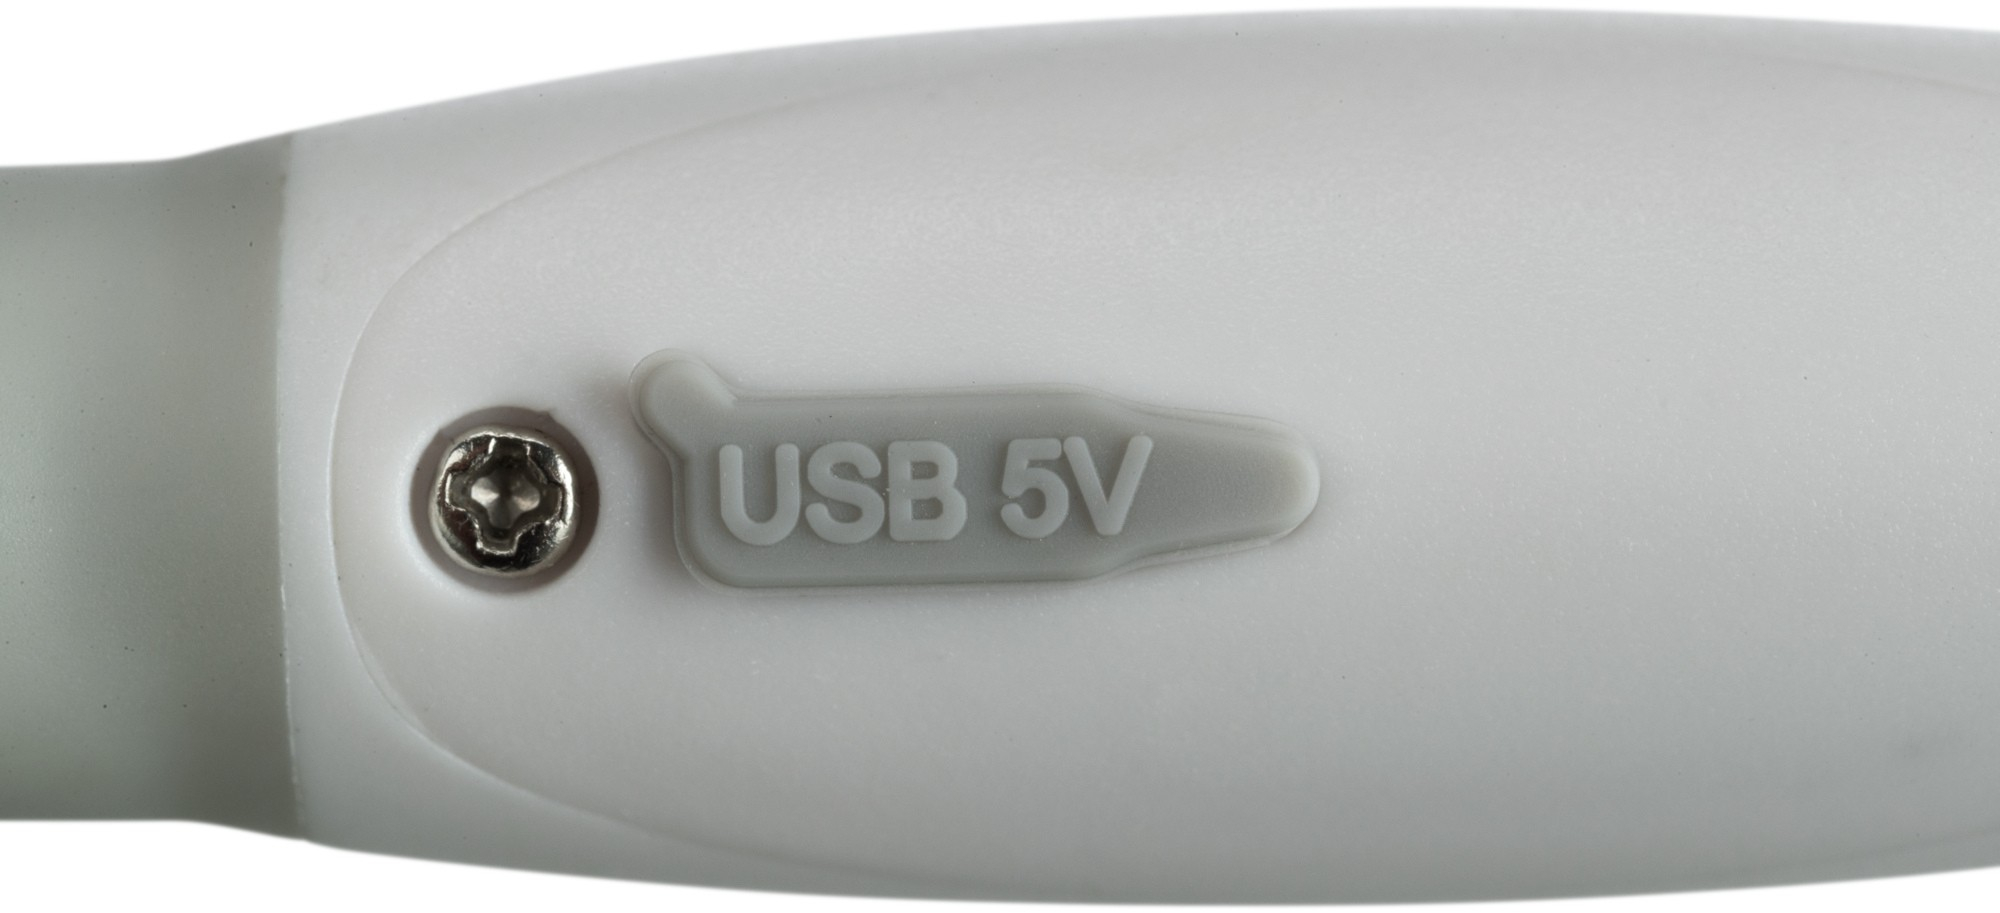 Flash anello luminoso USB multicolore